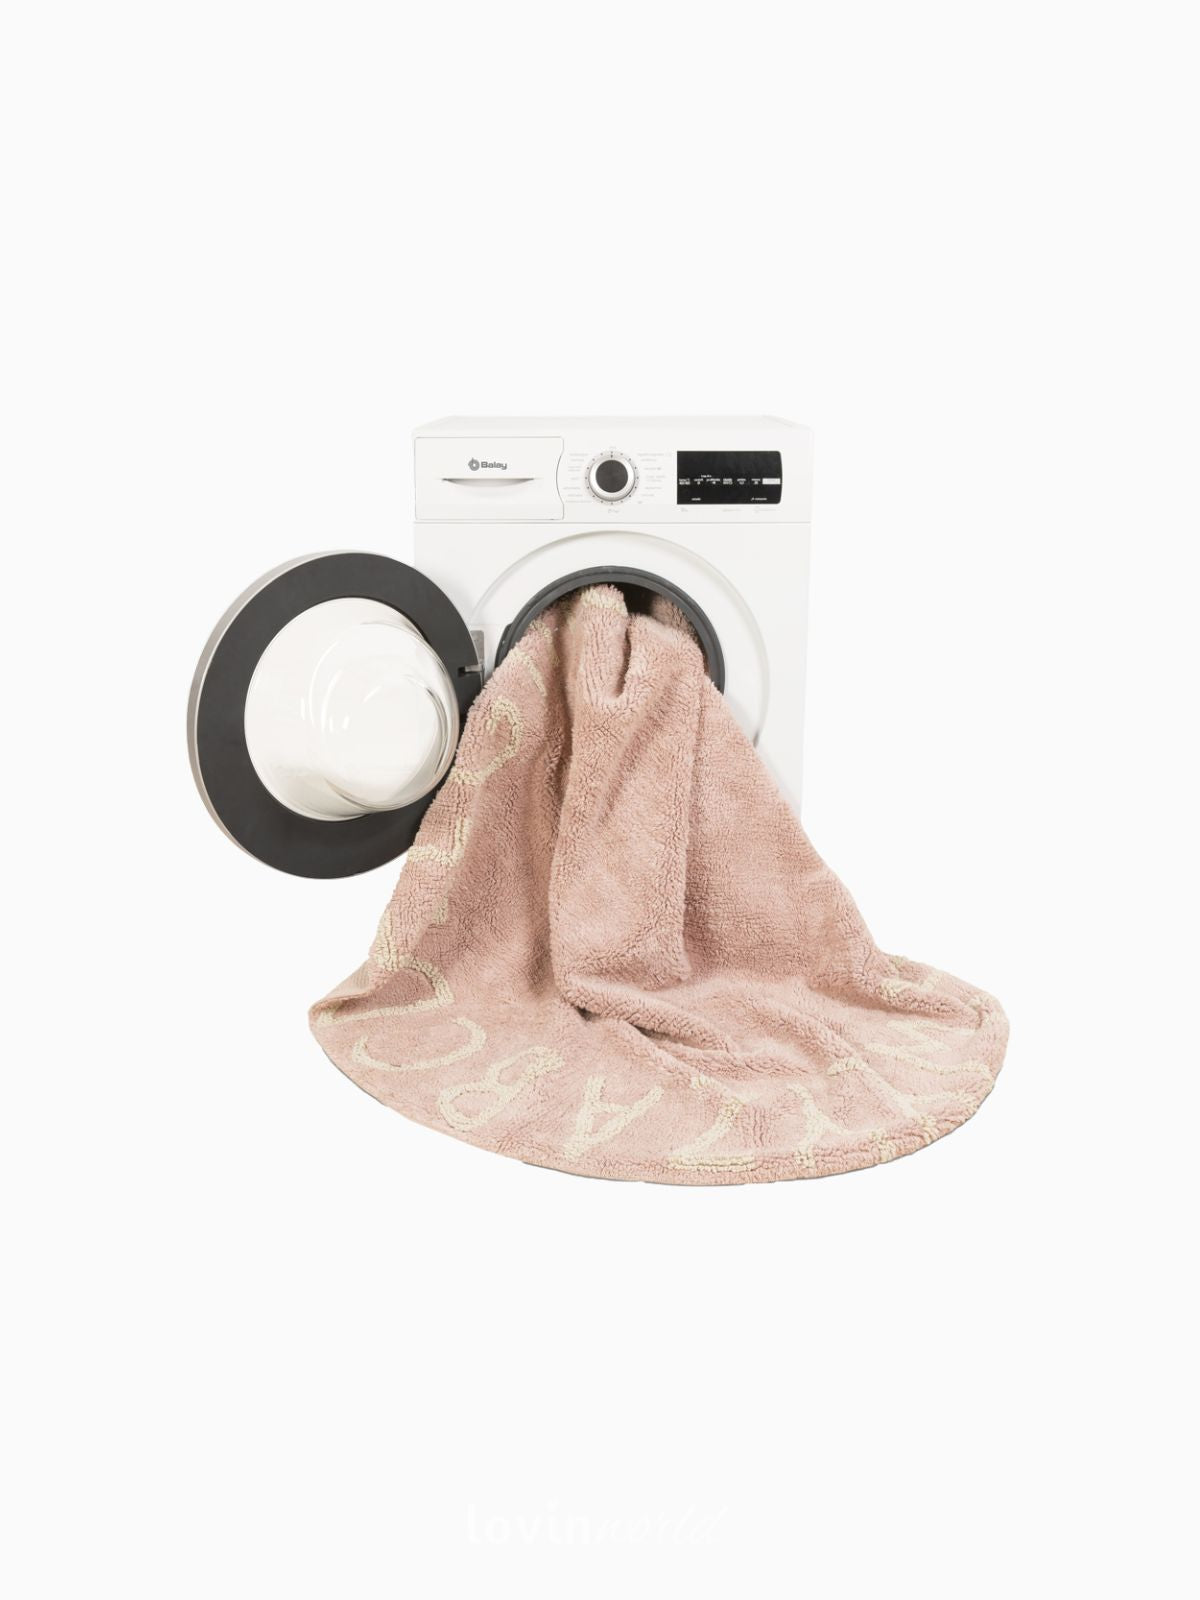 Tappeto in cotone lavabile rotondo ABC, in colore rosa vintage-5